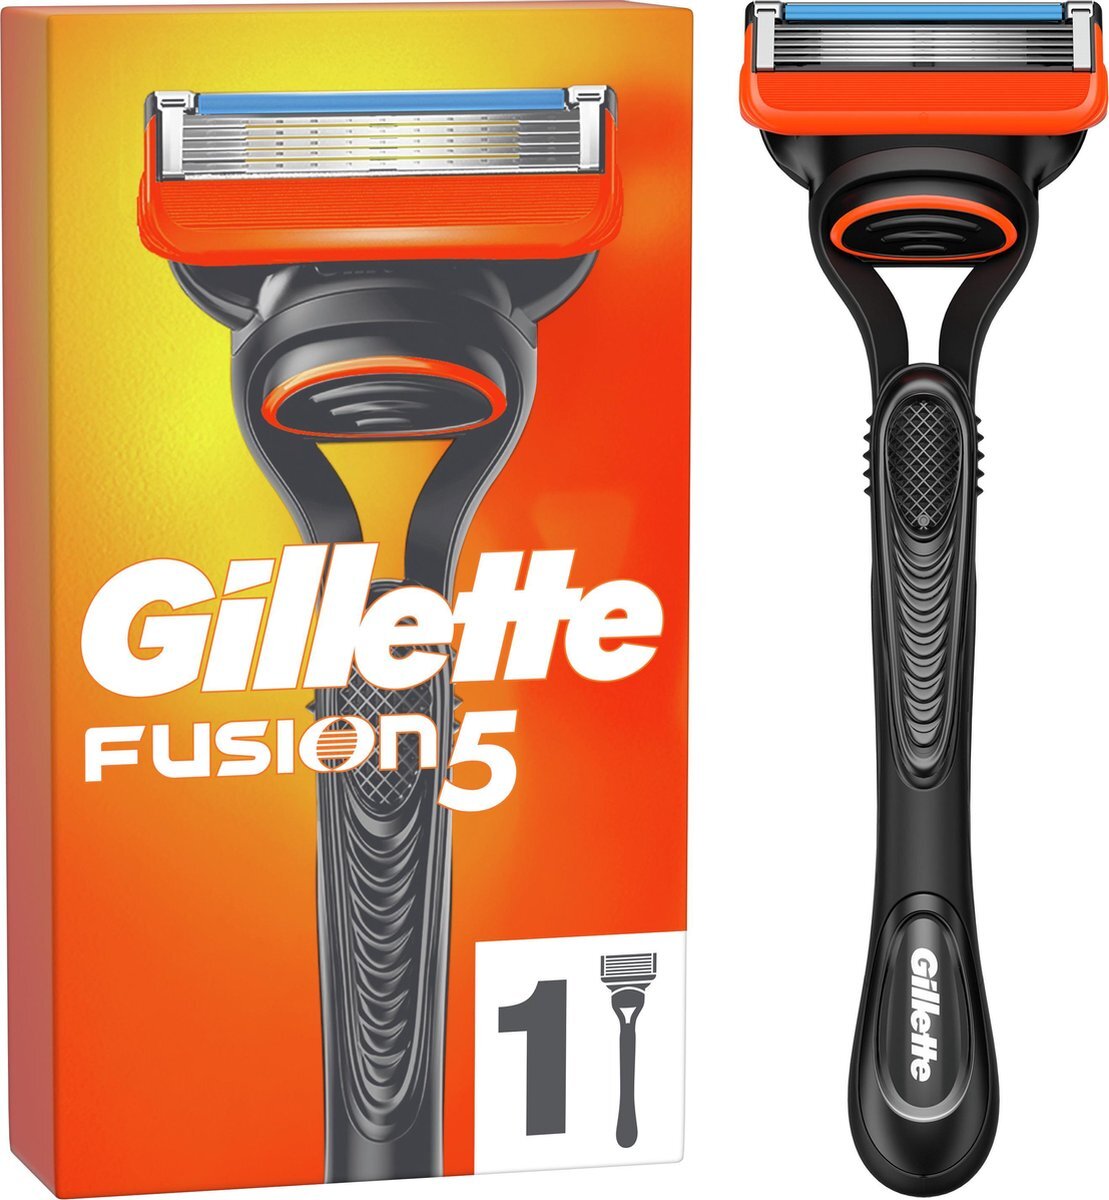 Gillette Gillette Fusion Scheerapparaat